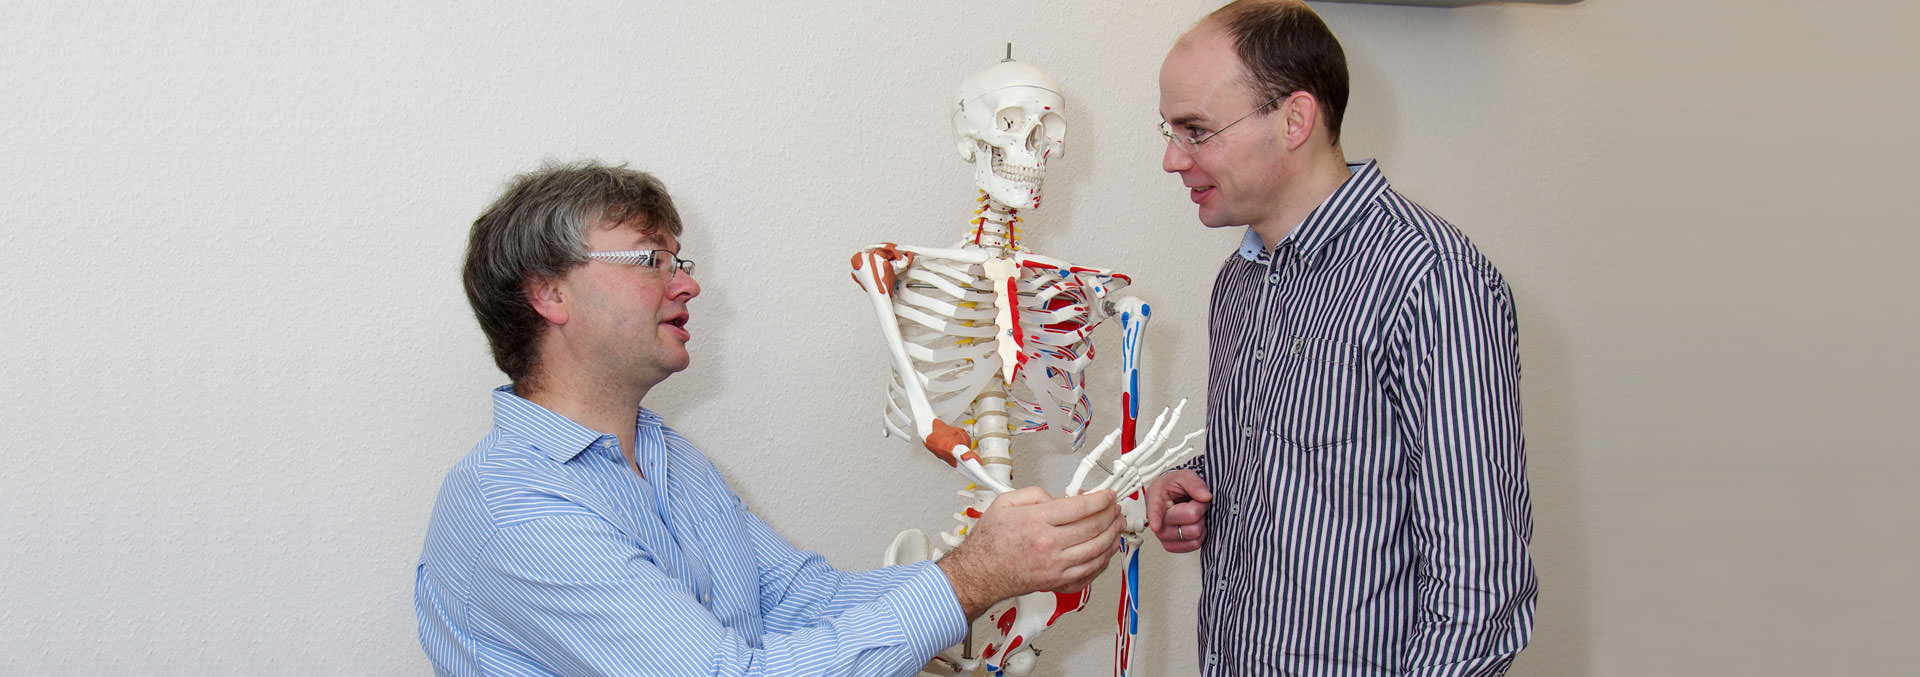 Foto: Prof. Dr. Kamp und Dr. Schmitz mit Skelettmodel